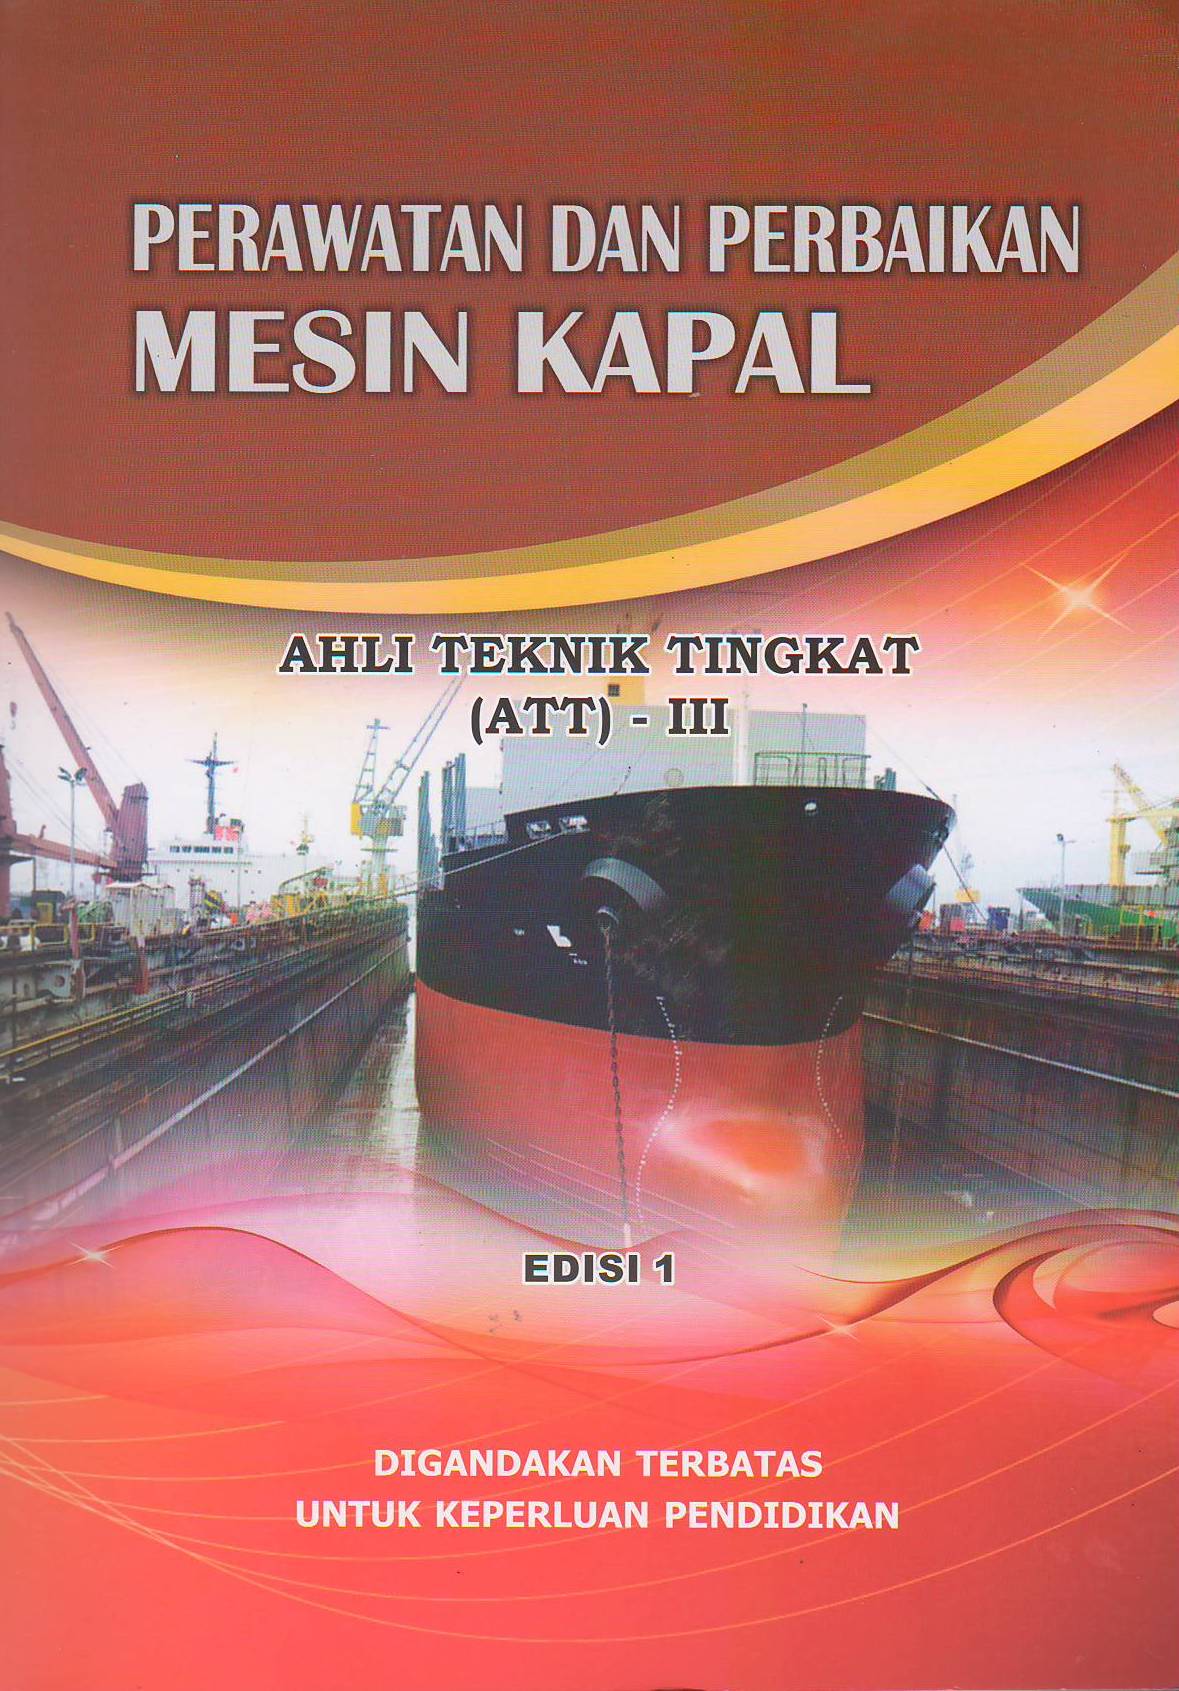 Perawatan dan Perbaikan Mesin Kapal: Ahli Teknik Tingkat (ATT) - III